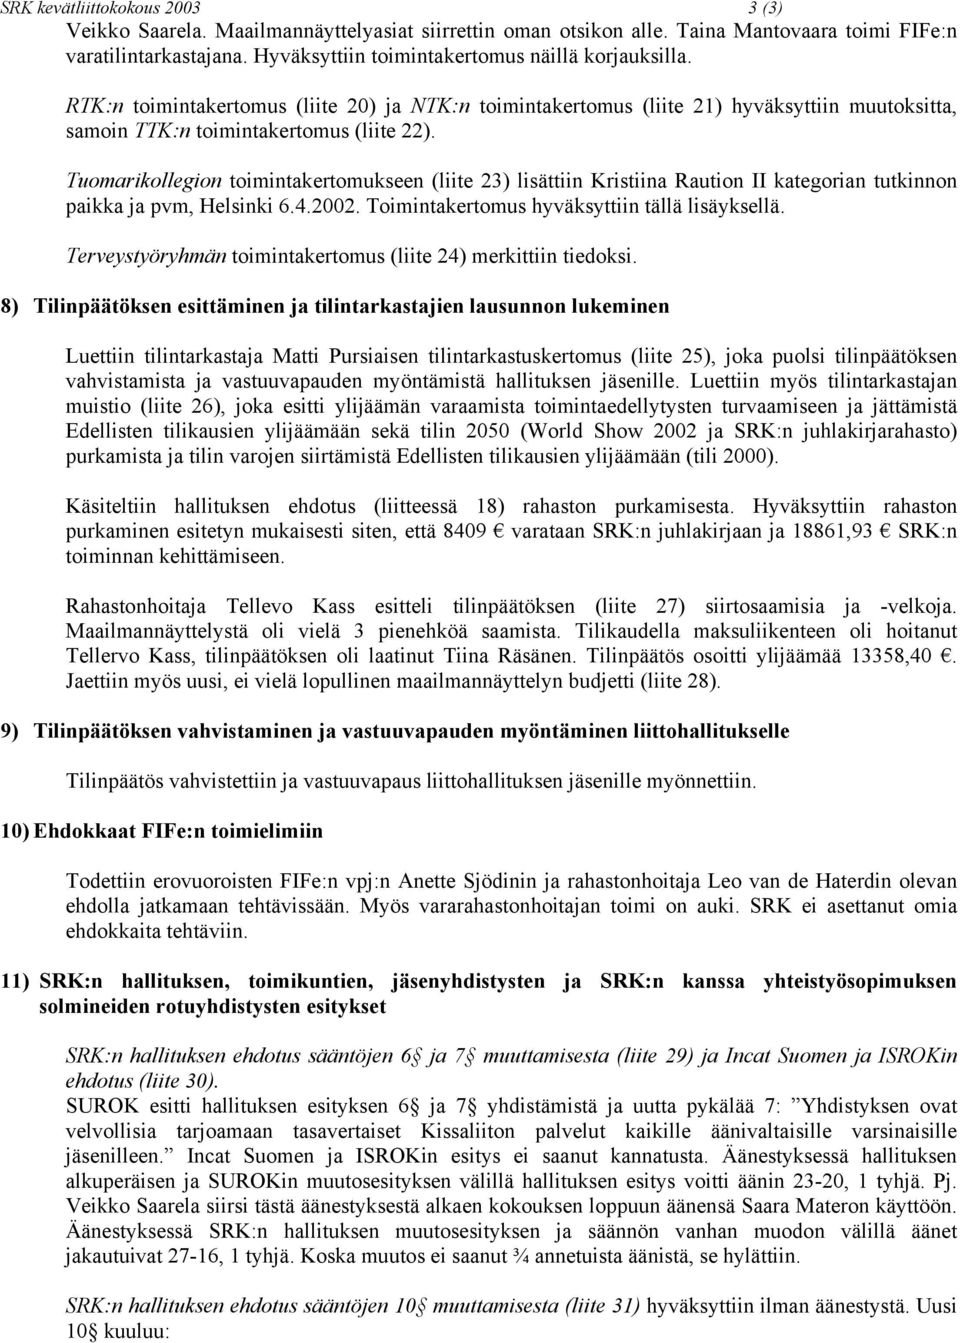 Tuomarikollegion toimintakertomukseen (liite 23) lisättiin Kristiina Raution II kategorian tutkinnon paikka ja pvm, Helsinki 6.4.2002. Toimintakertomus hyväksyttiin tällä lisäyksellä.